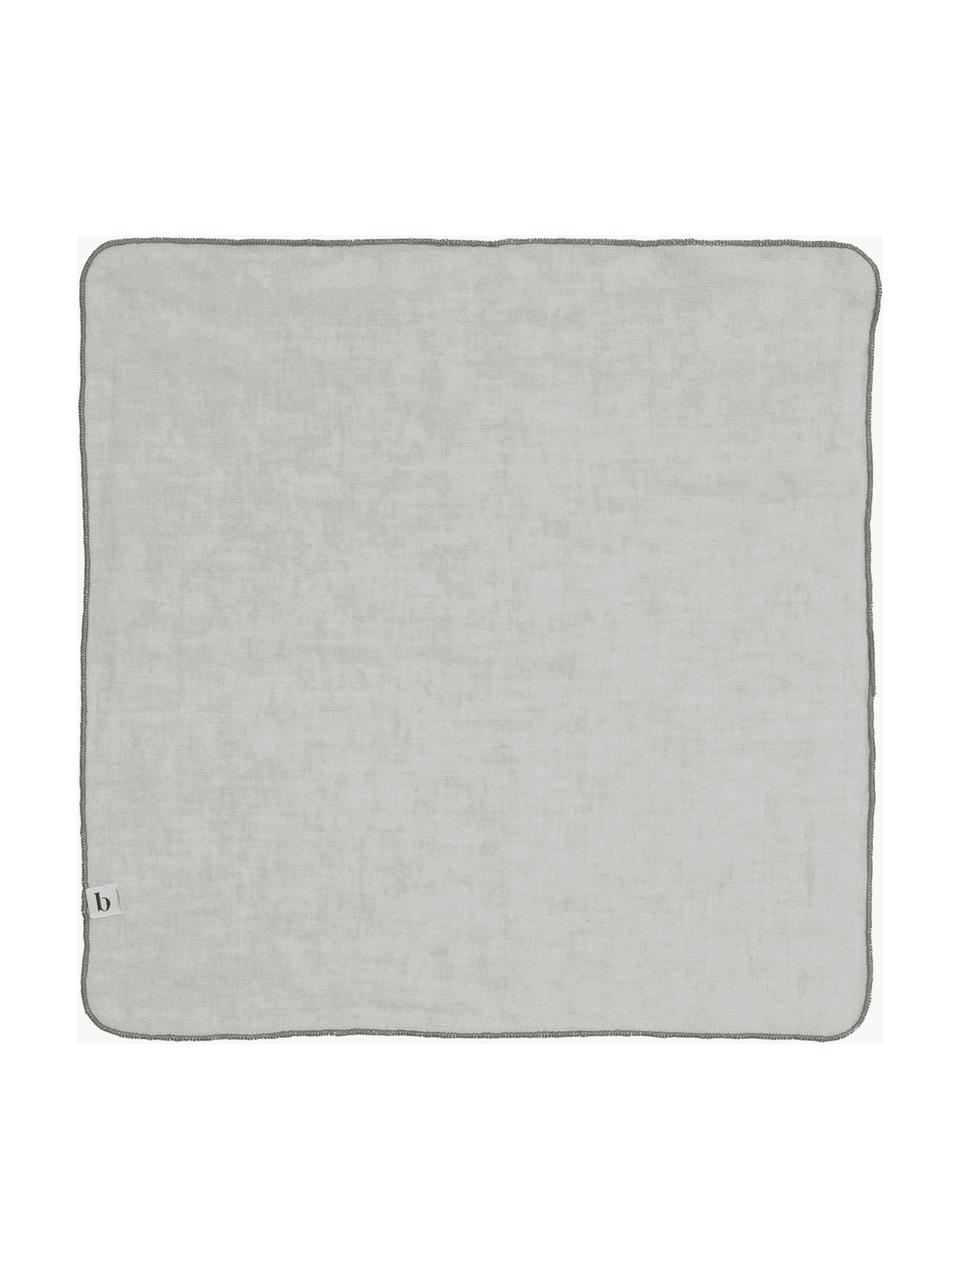 Serviettes de table en lin Gracie, 2 pièces, 100 % lin, Gris clair, larg. 45 x long. 45 cm